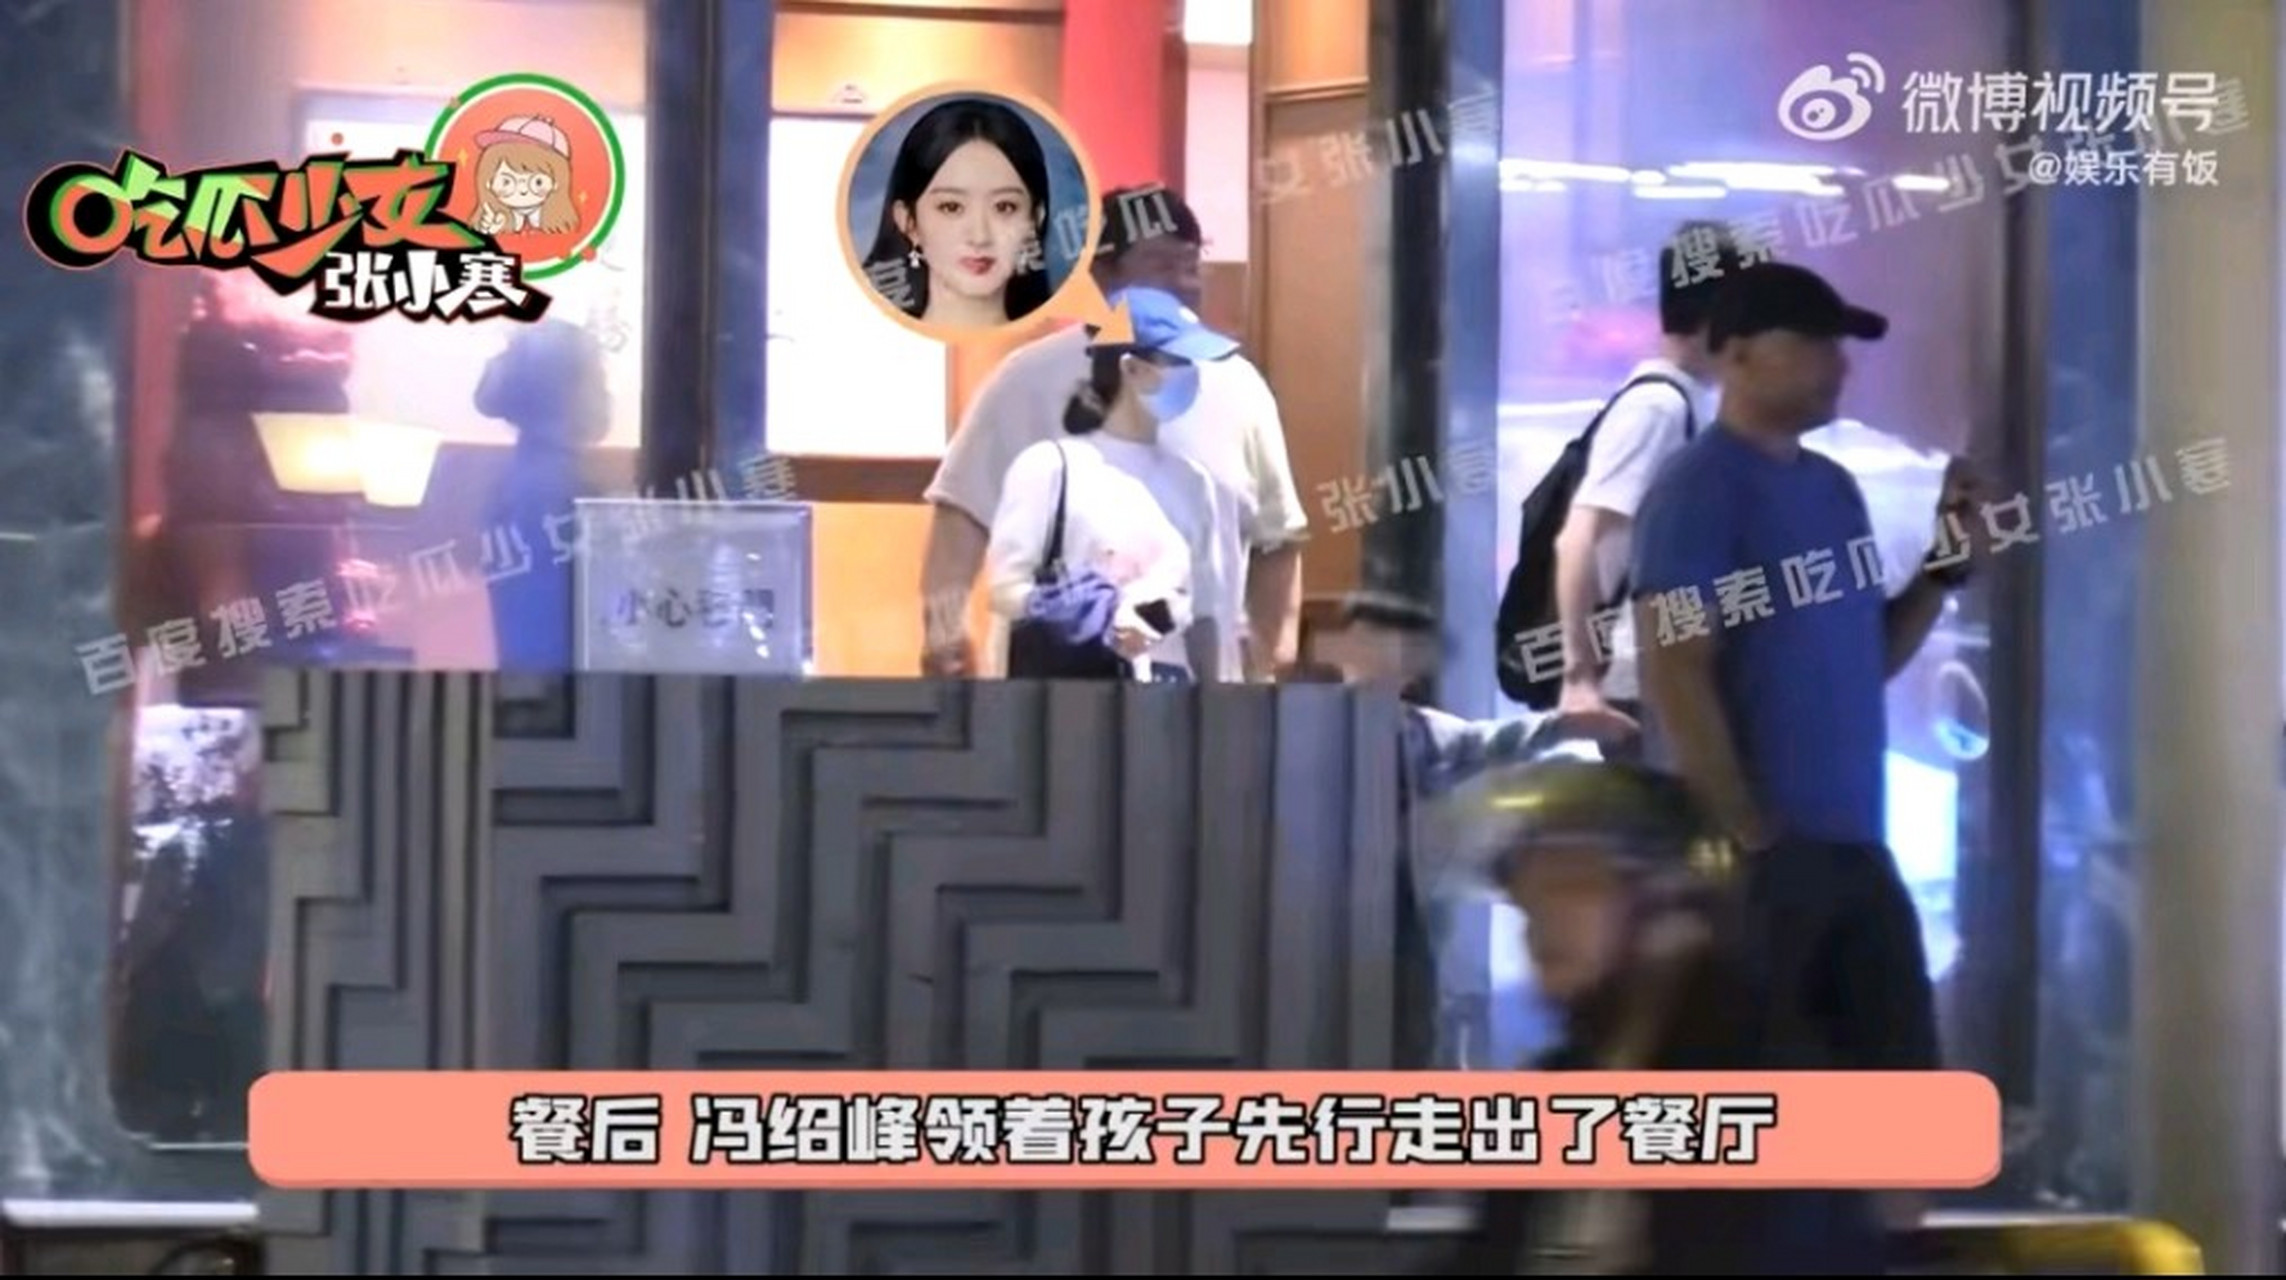 近日,有媒体拍到赵丽颖和冯绍峰带着孩子,一家三口出去聚餐的画面